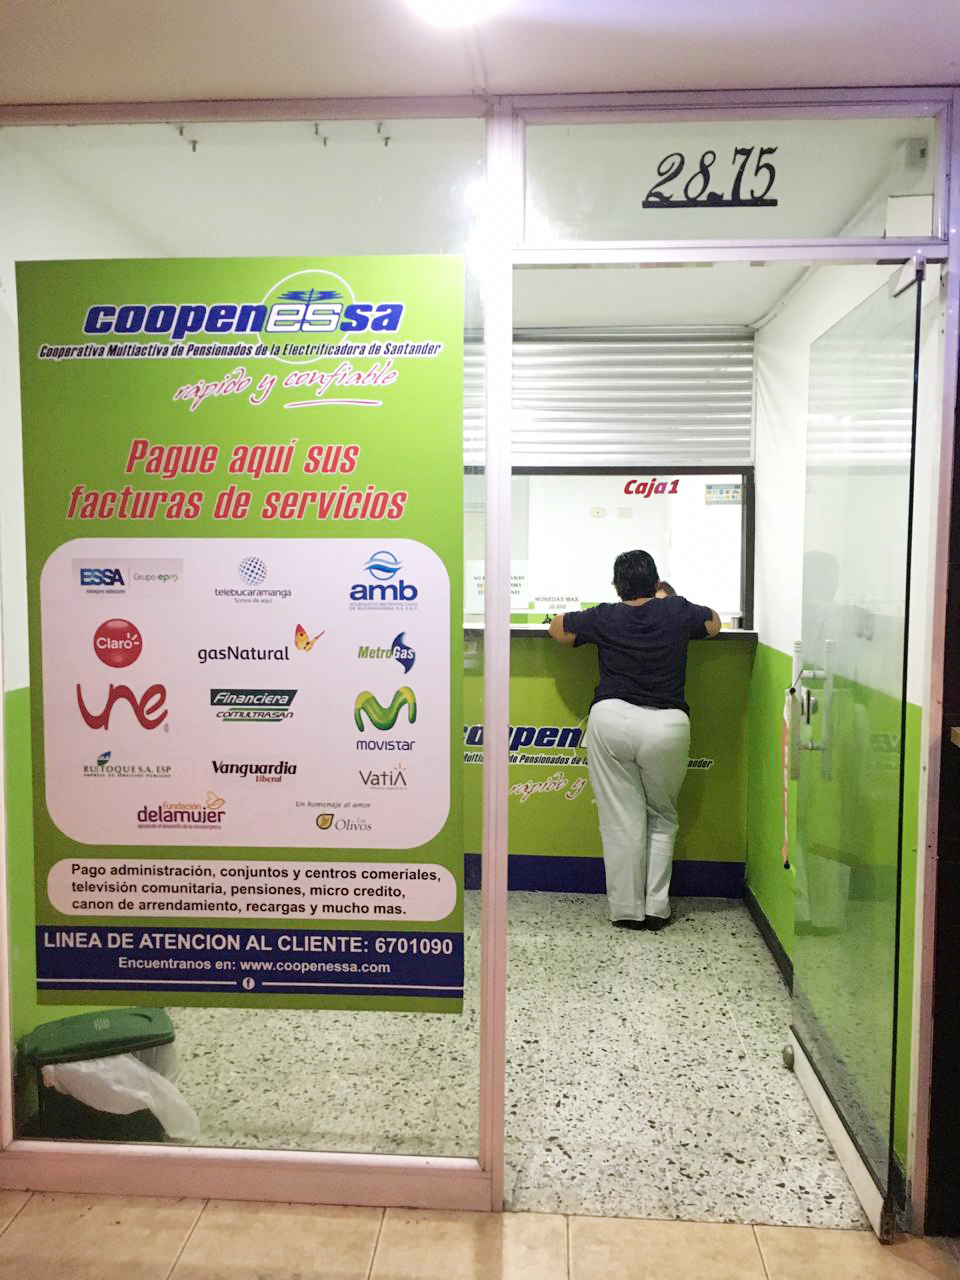 Multipagos La Aurora Corresponsal Bancario Bancolombia y Caja Social